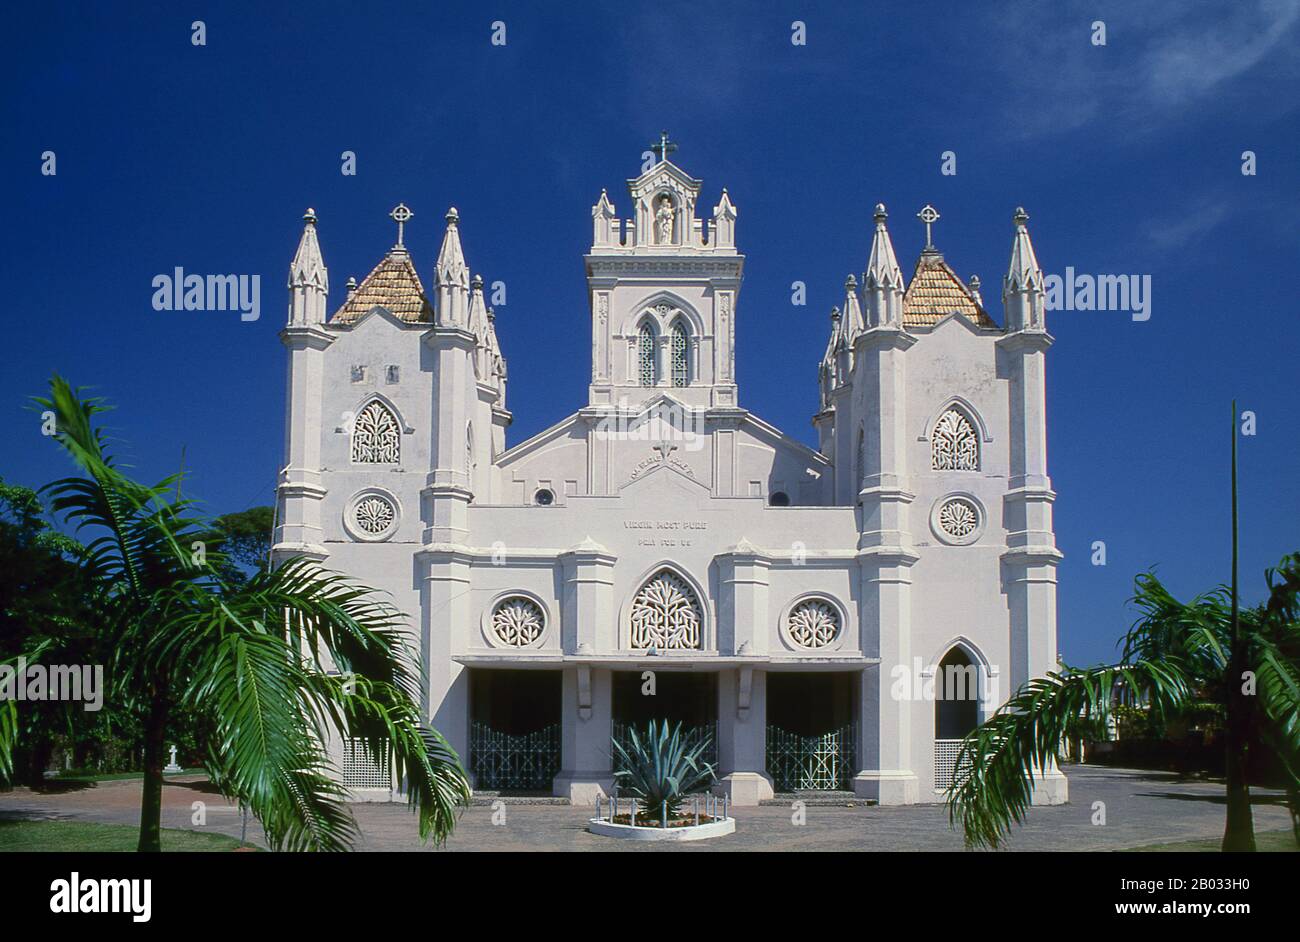 Die katholische St.-Marien-Kirche wurde ursprünglich im Jahre 1834 erbaut. Das von den Portugiesen nach Sri Lanka eingeführte Christenthum ist überwiegend von der röm.-kathischen Varietät und am sichtbarsten entlang der Westküste, vor allem um Negombo. Die Stadt Dehiwala hat in den letzten Jahren eine rasche Industrialisierung und Urbanisierung erlebt. An der Grenze zu Colombo gelegen, führte das billigere Land zu einem Immobilienboom mit Hypermärkten, Kaufhäusern und Apartmentkomplexen, die seine Skyline durchkämmen. Dehiwala hat sich in den letzten Jahren zu einem attraktiven Ort für Ferienunterkünfte für beide Businnen entwickelt Stockfoto